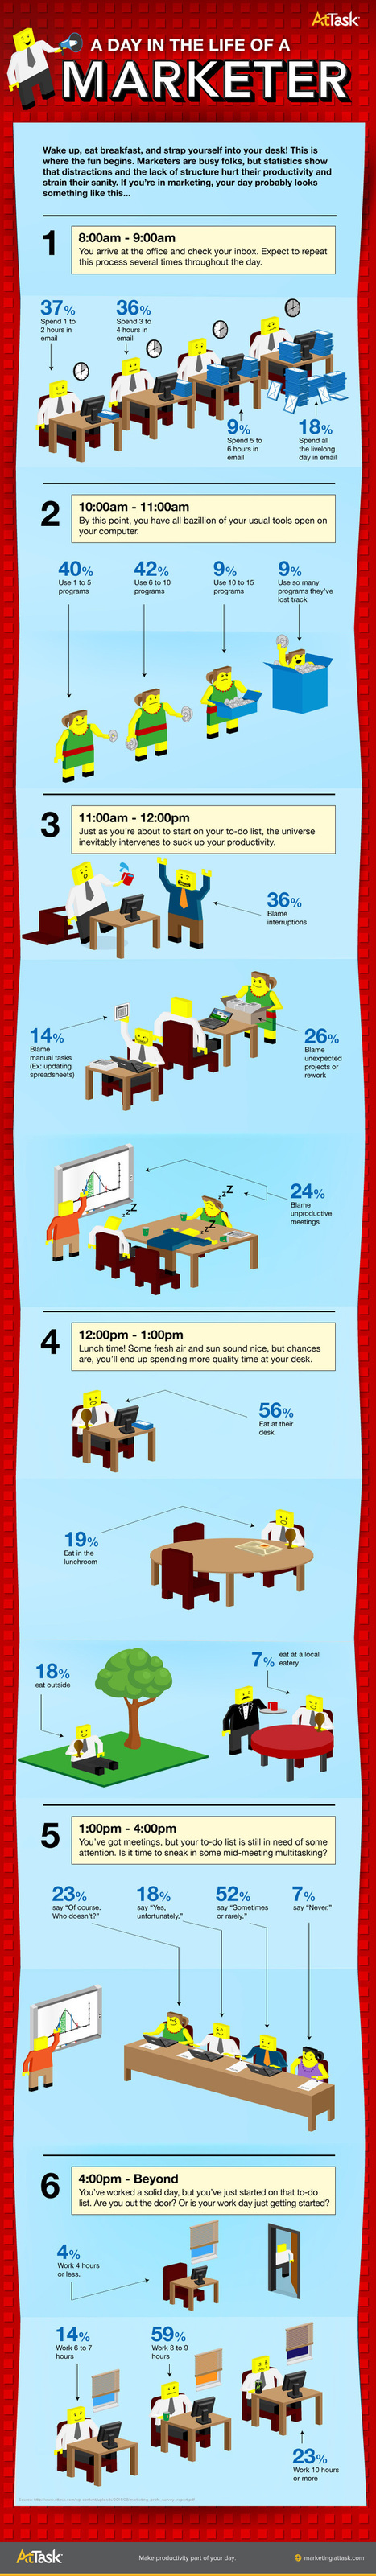 Un día en la vida de un profesional del marketing #infografia #infographic #marketing | E-Learning-Inclusivo (Mashup) | Scoop.it